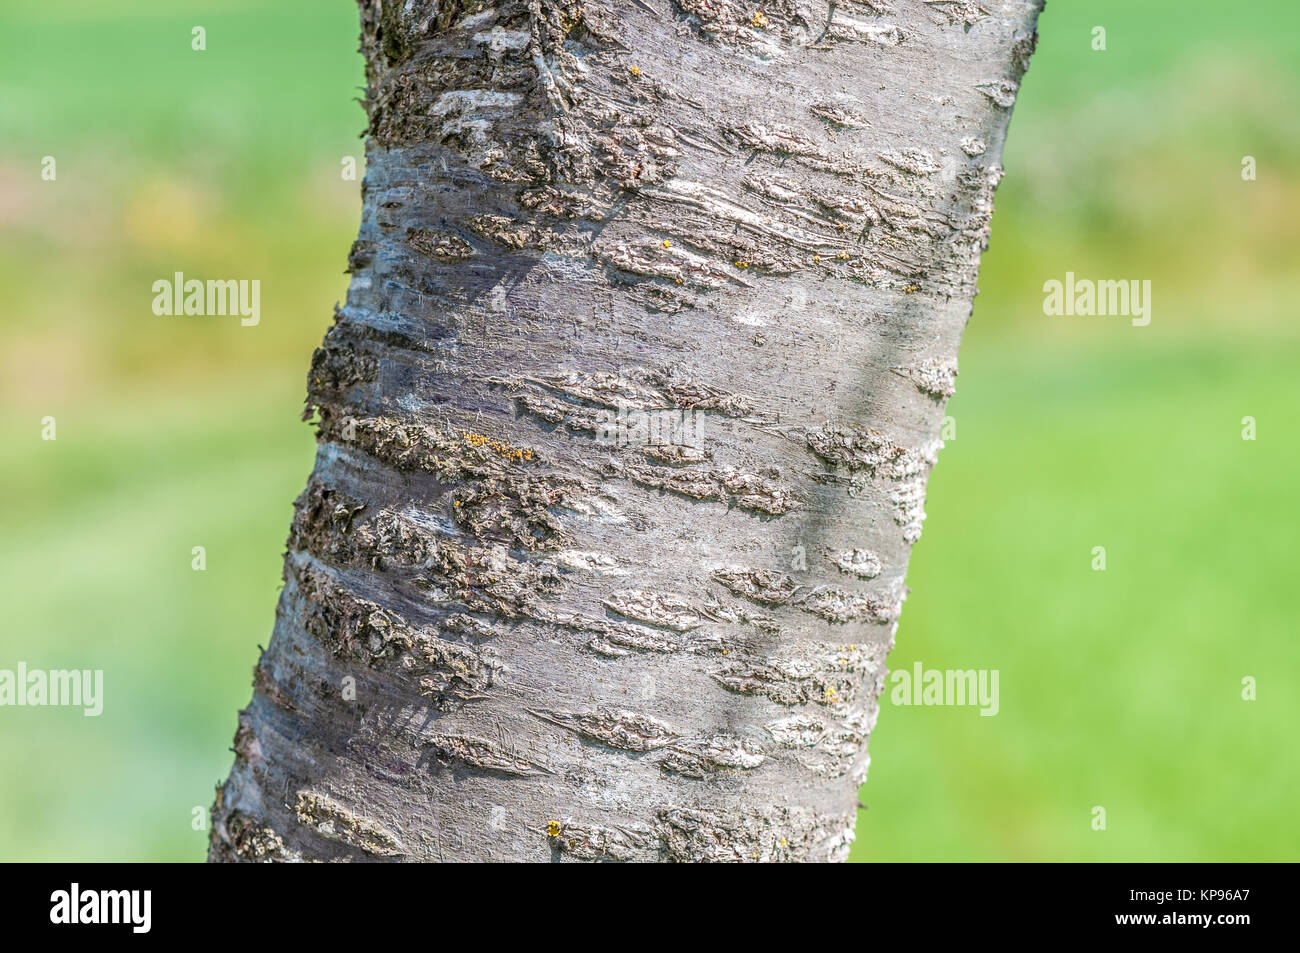 Vista ravvicinata della corteccia del ciliegio, Prunus cerasus, e uno sfondo verde. Santpedor, Catalogna, Spagna Foto Stock